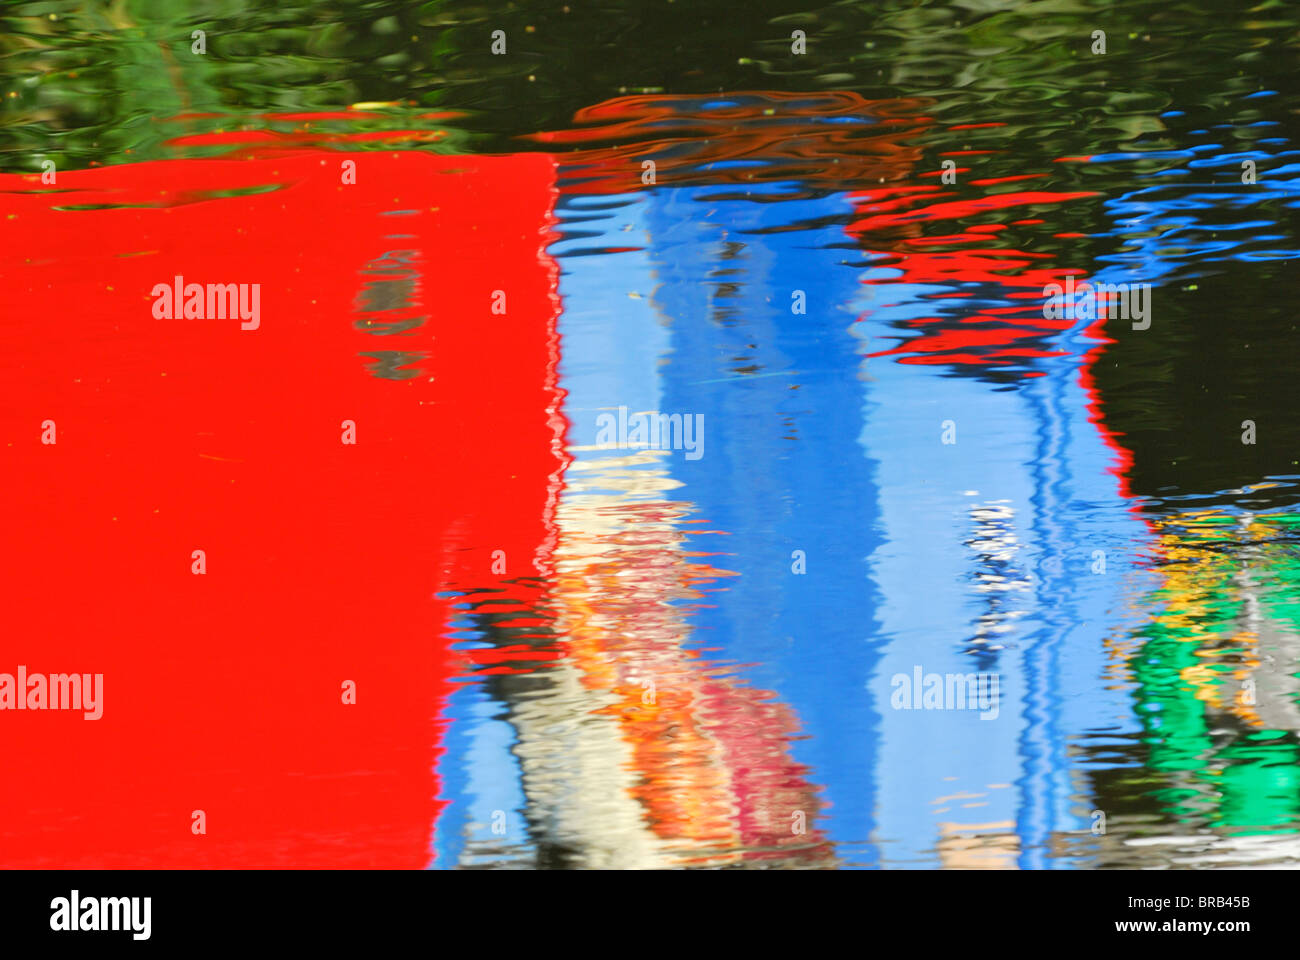 Motifs abstraits colorés dans l'eau Banque D'Images